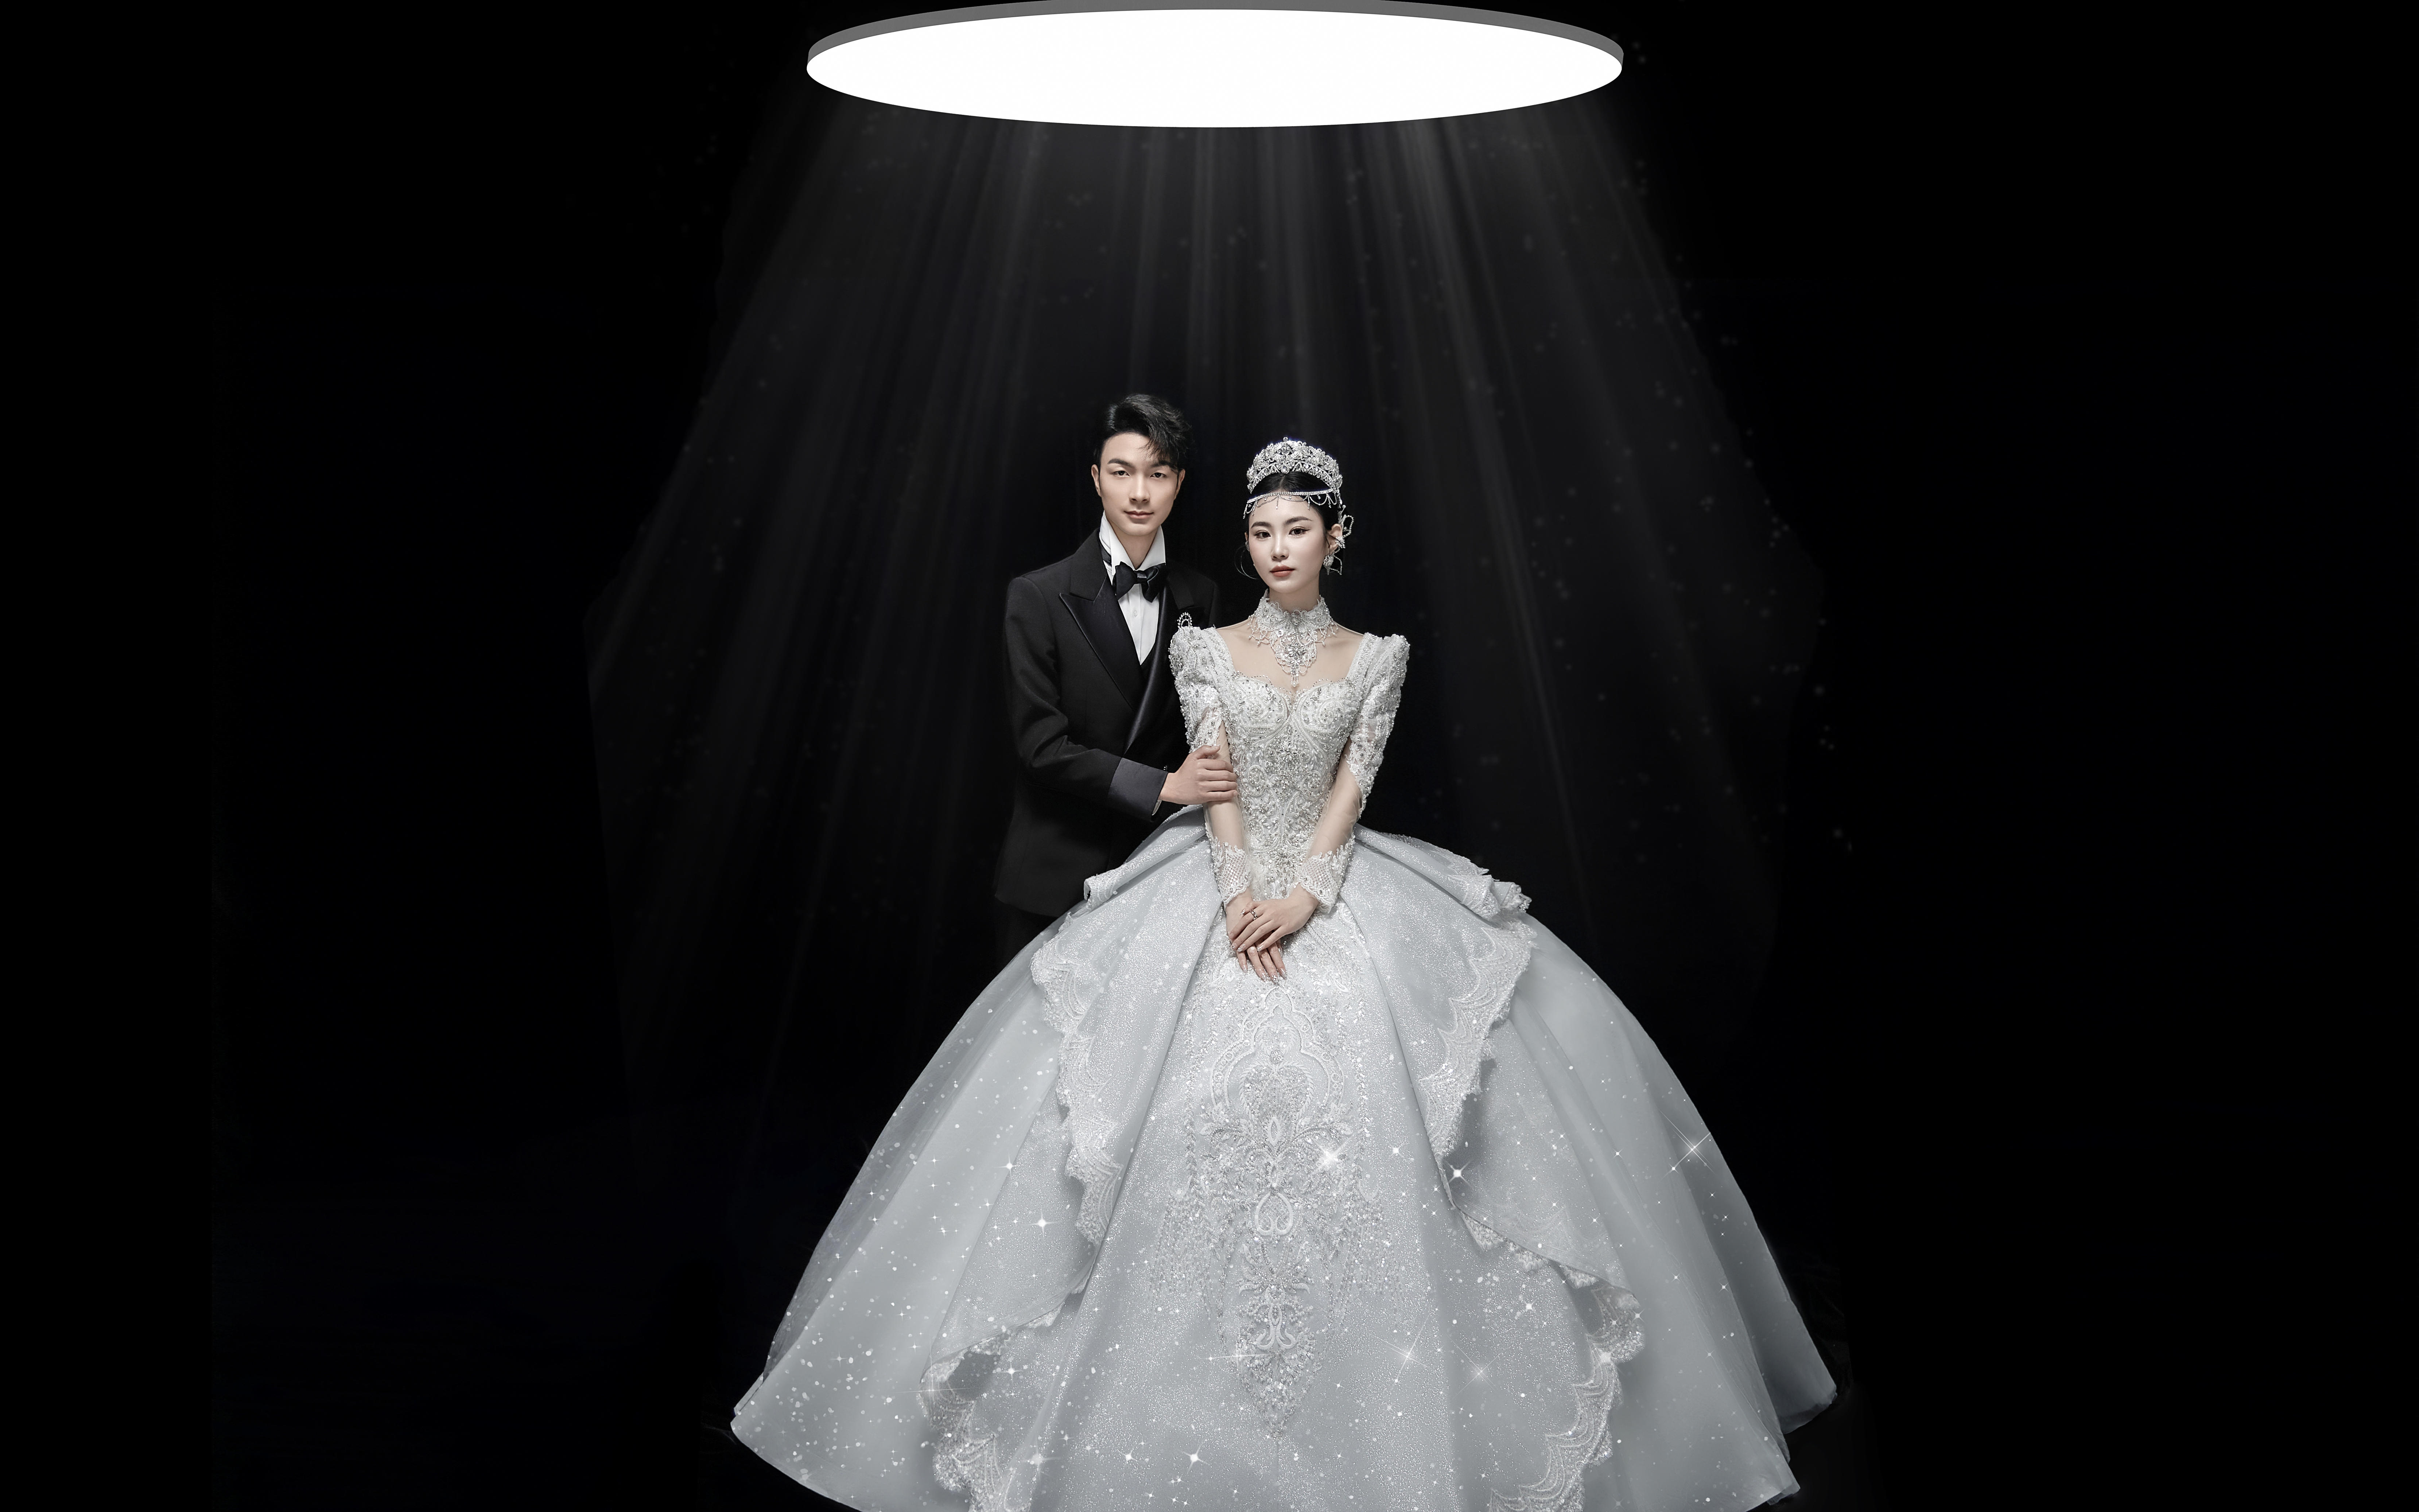 客片分享—无法拒绝‼️高级仪式感爆棚的光影婚纱照